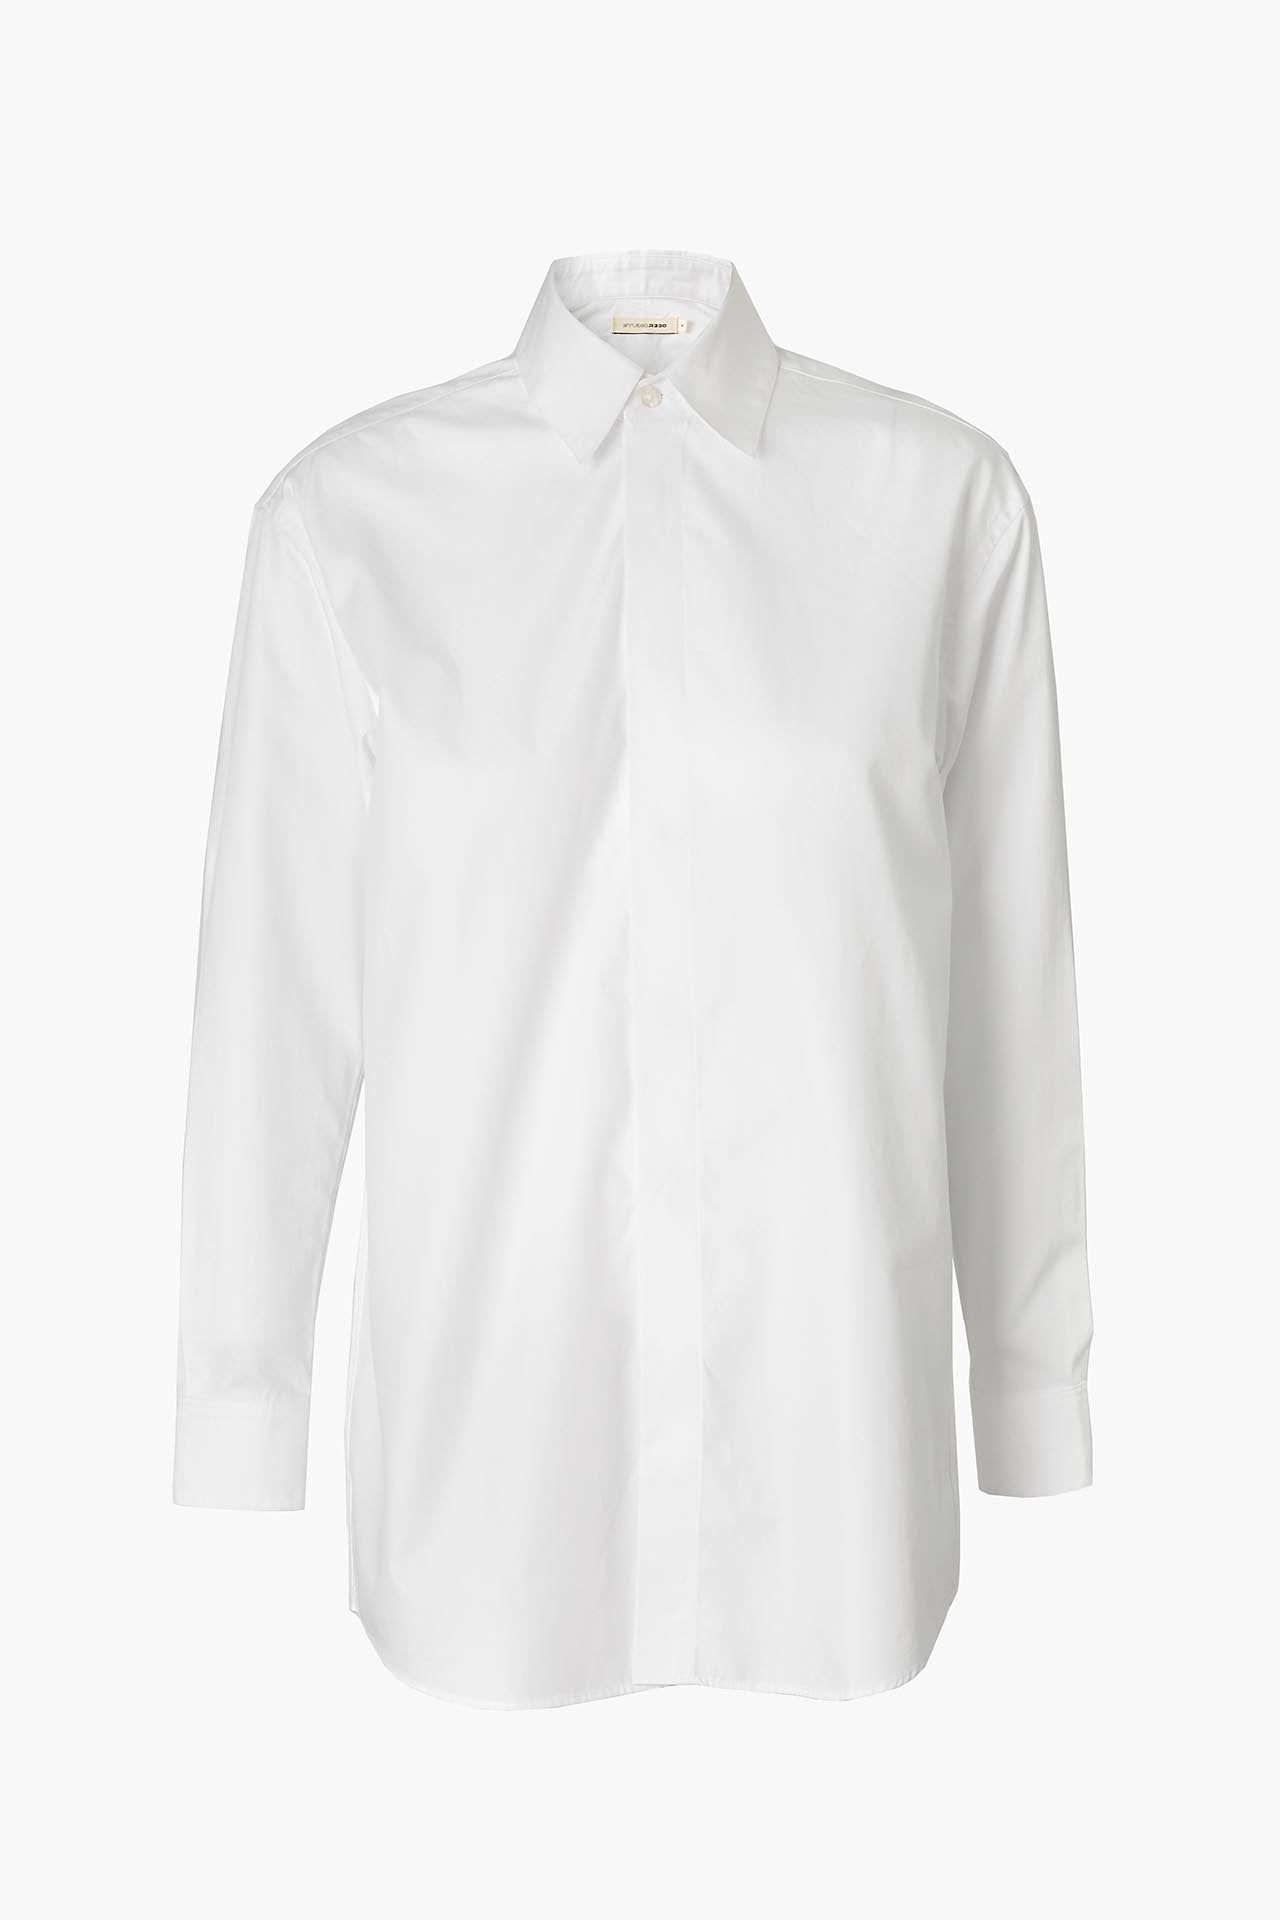 White Cotton Shirt - Regular Fit